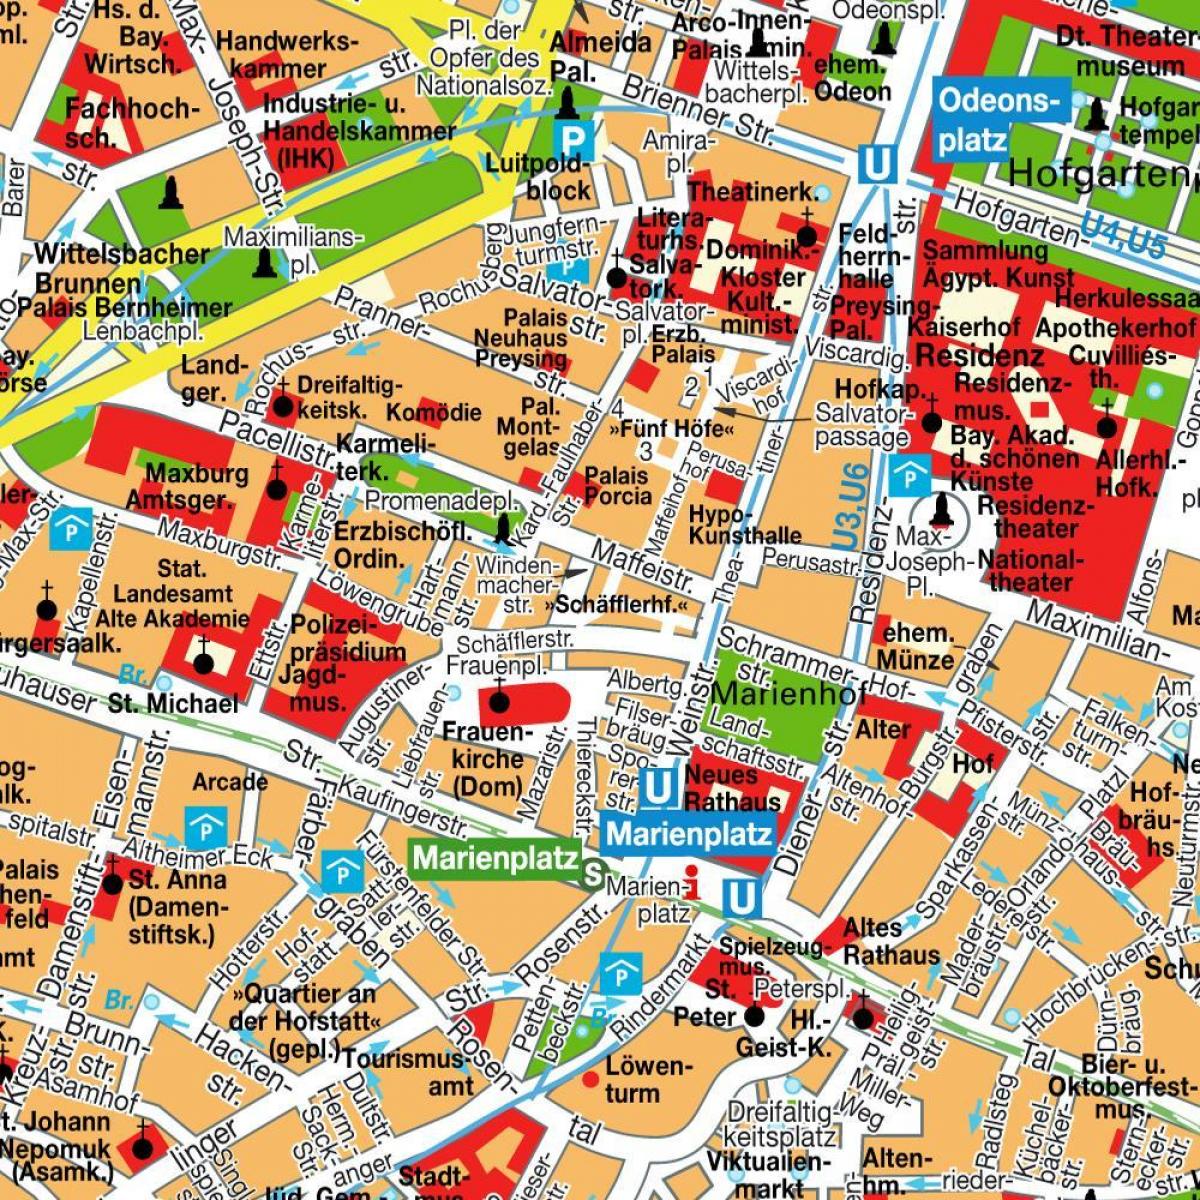 ქუჩის რუკა მიუნხენის ქალაქის ცენტრში